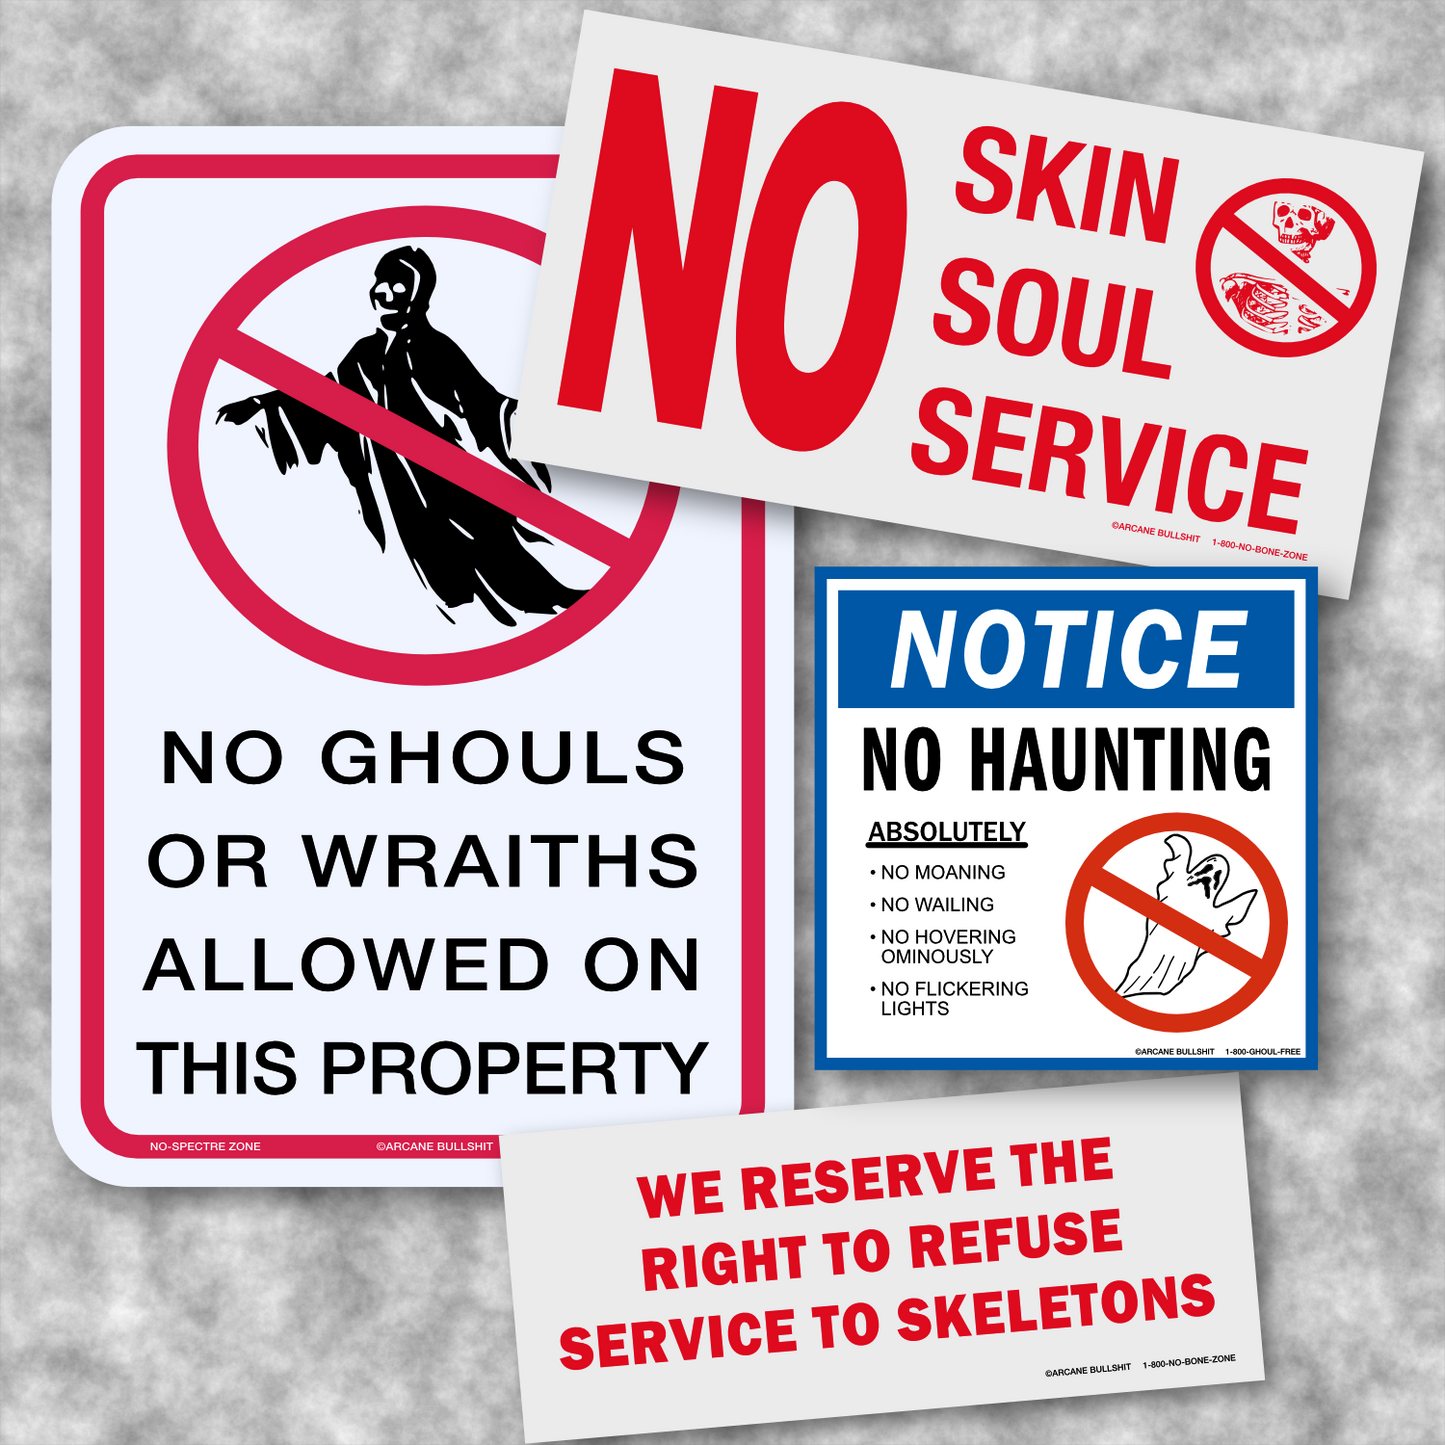 "Ghoul Begone" Sticker Pack